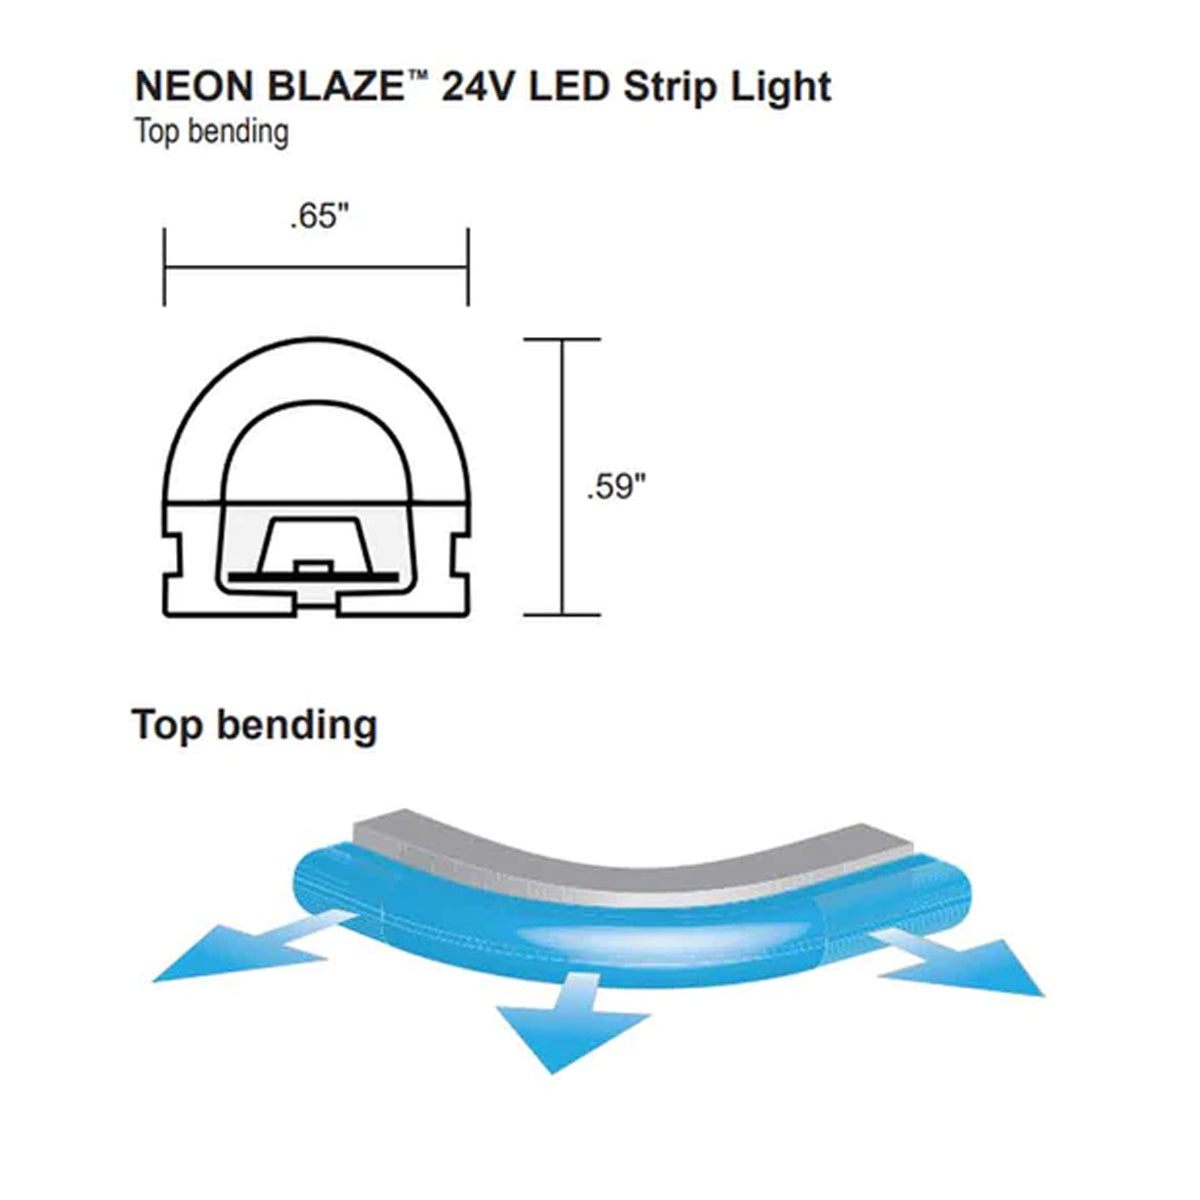 Neon BLAZE LED Neon Strip Light, Blue, 24V, Top Bending